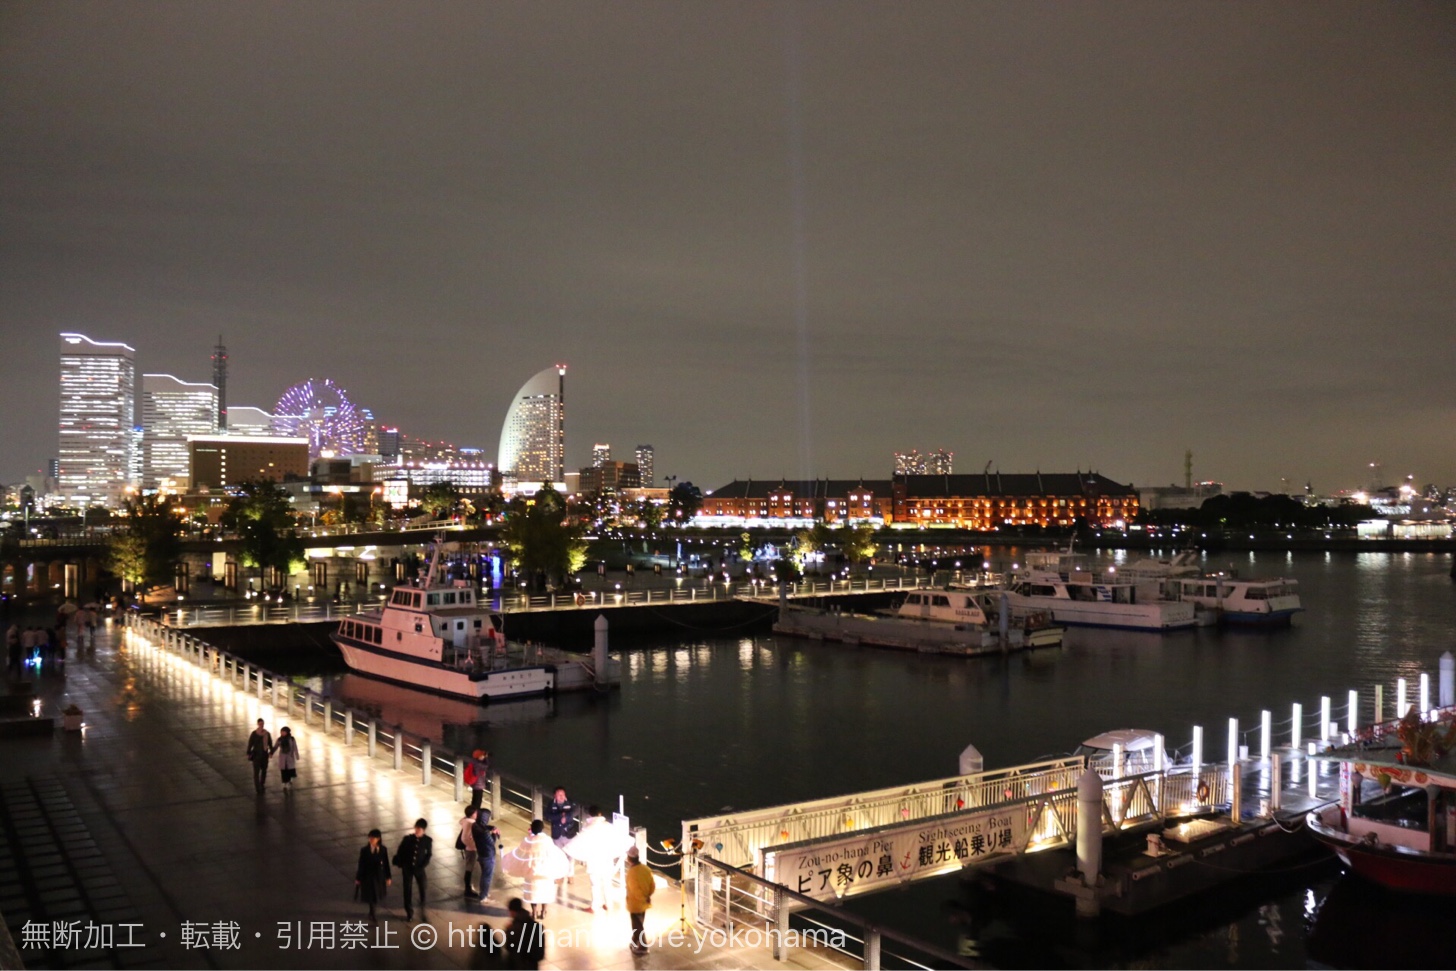 スマートイルミネーション開催中の横浜みなとみらいの夜景